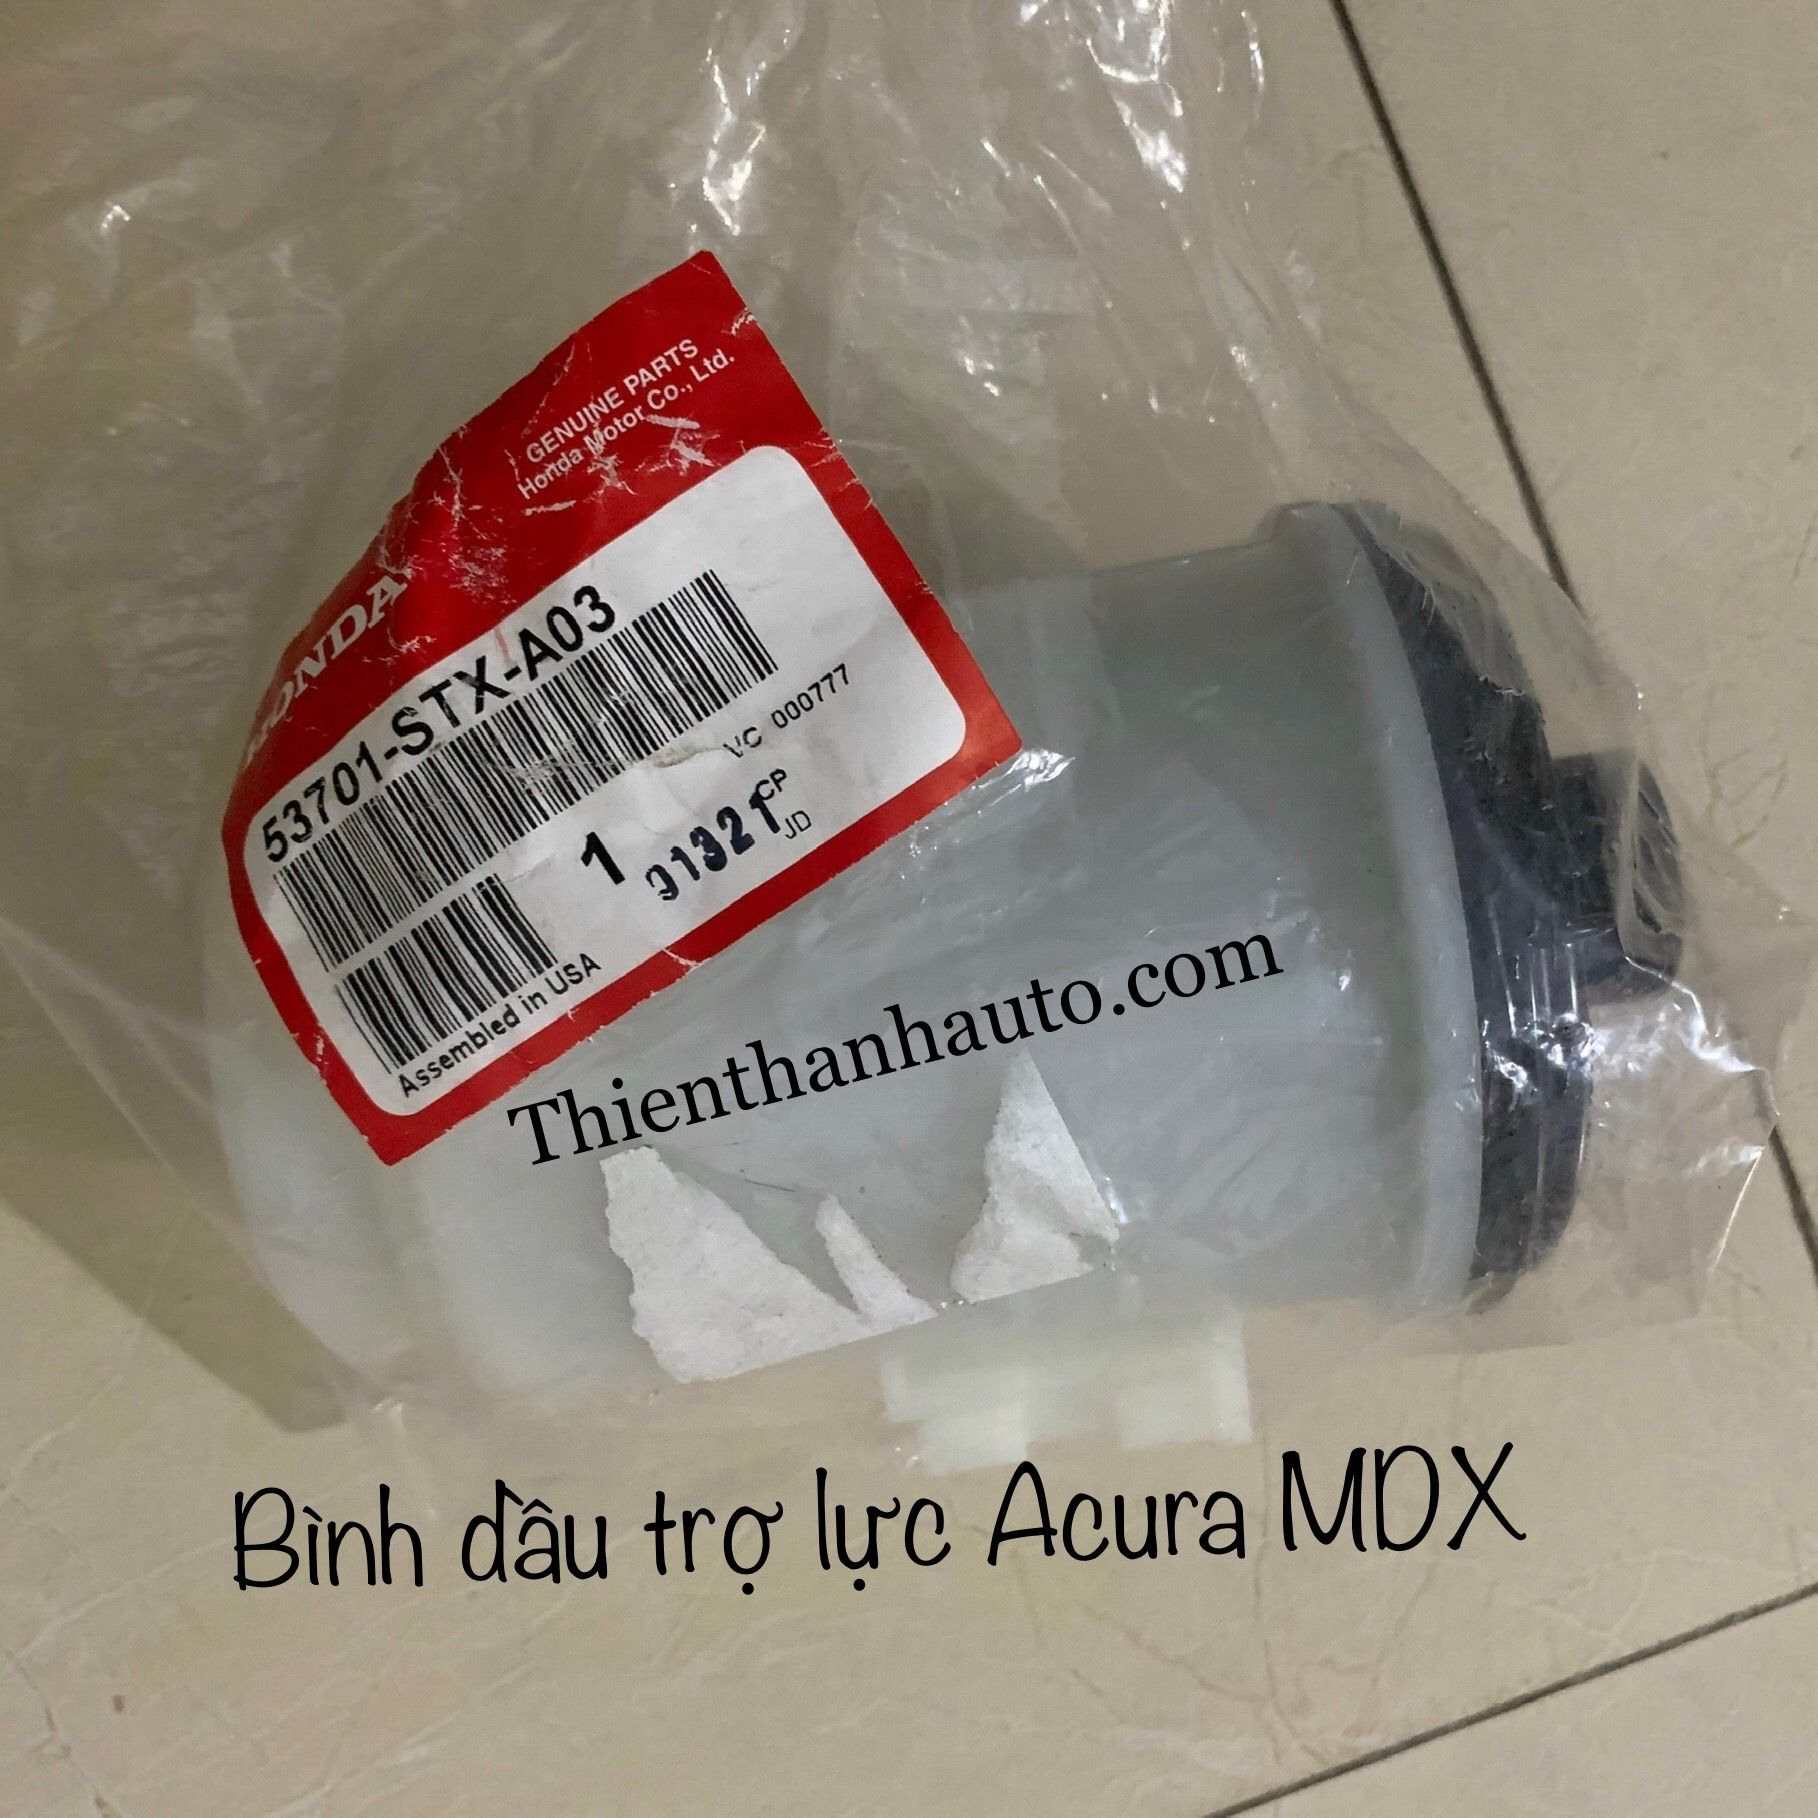 Bình dầu trợ lực Acura MDX chính hãng - Thienthanhauto.com